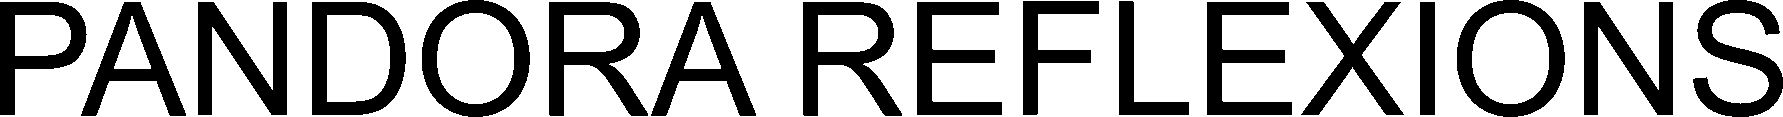 Trademark Logo PANDORA REFLEXIONS